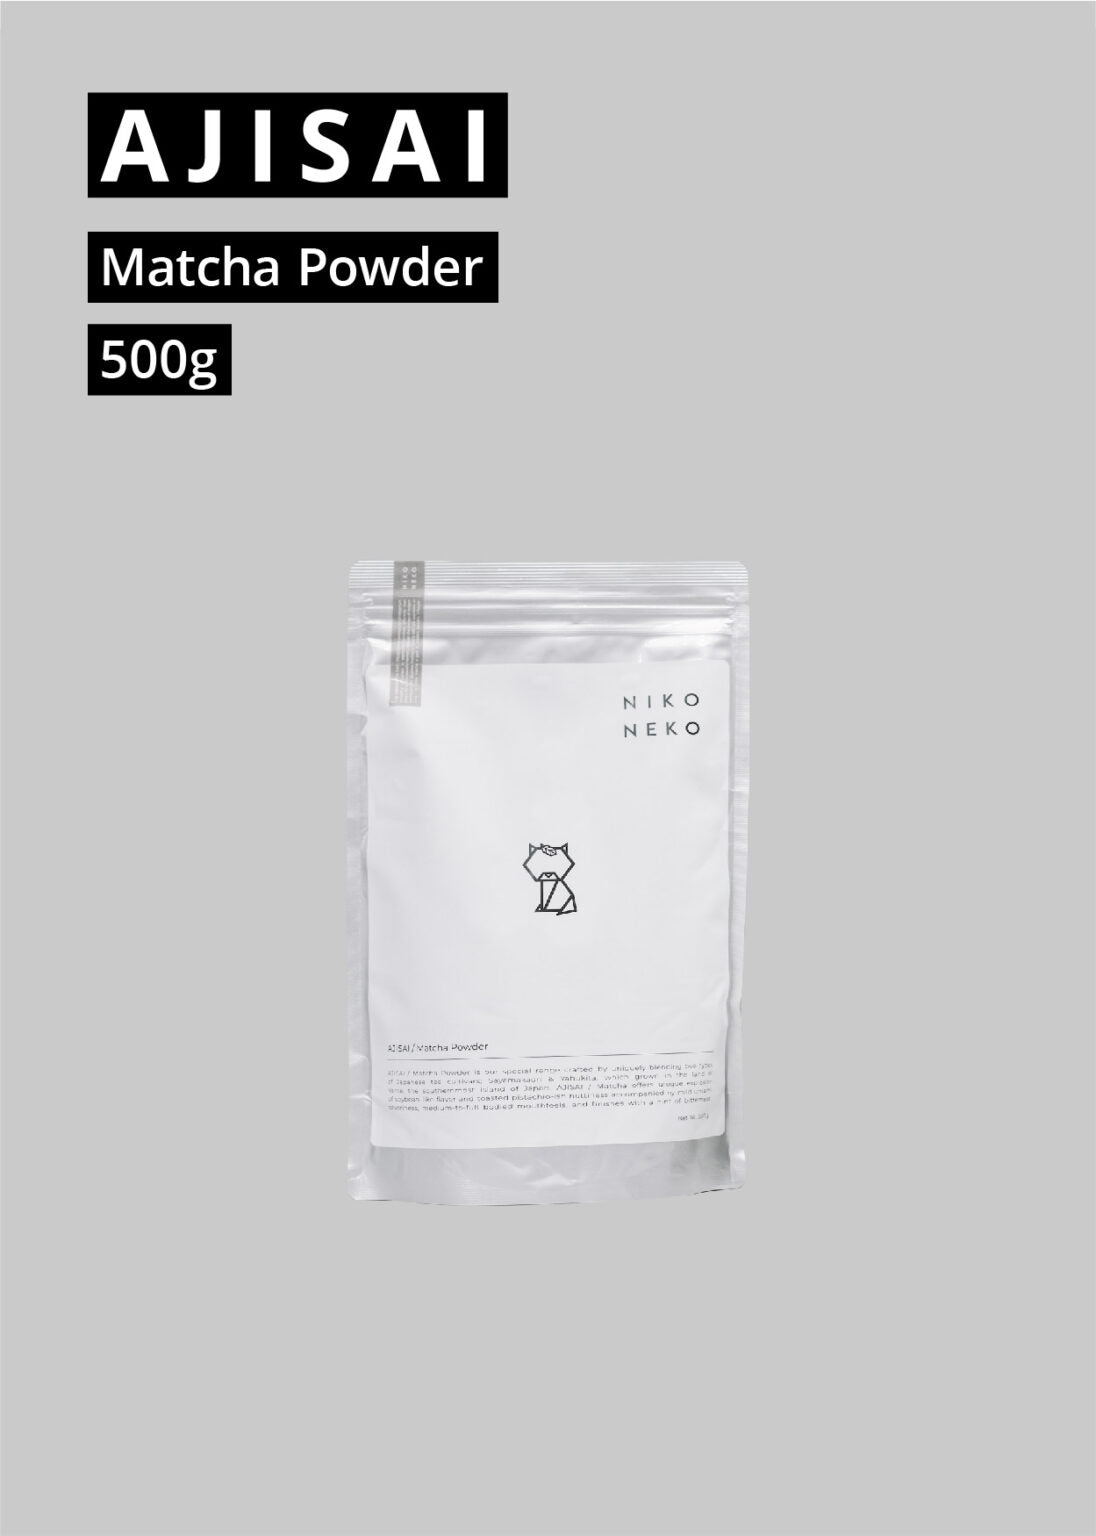 NikoNekoMatcha - AJISAI / MATCHA POWDER